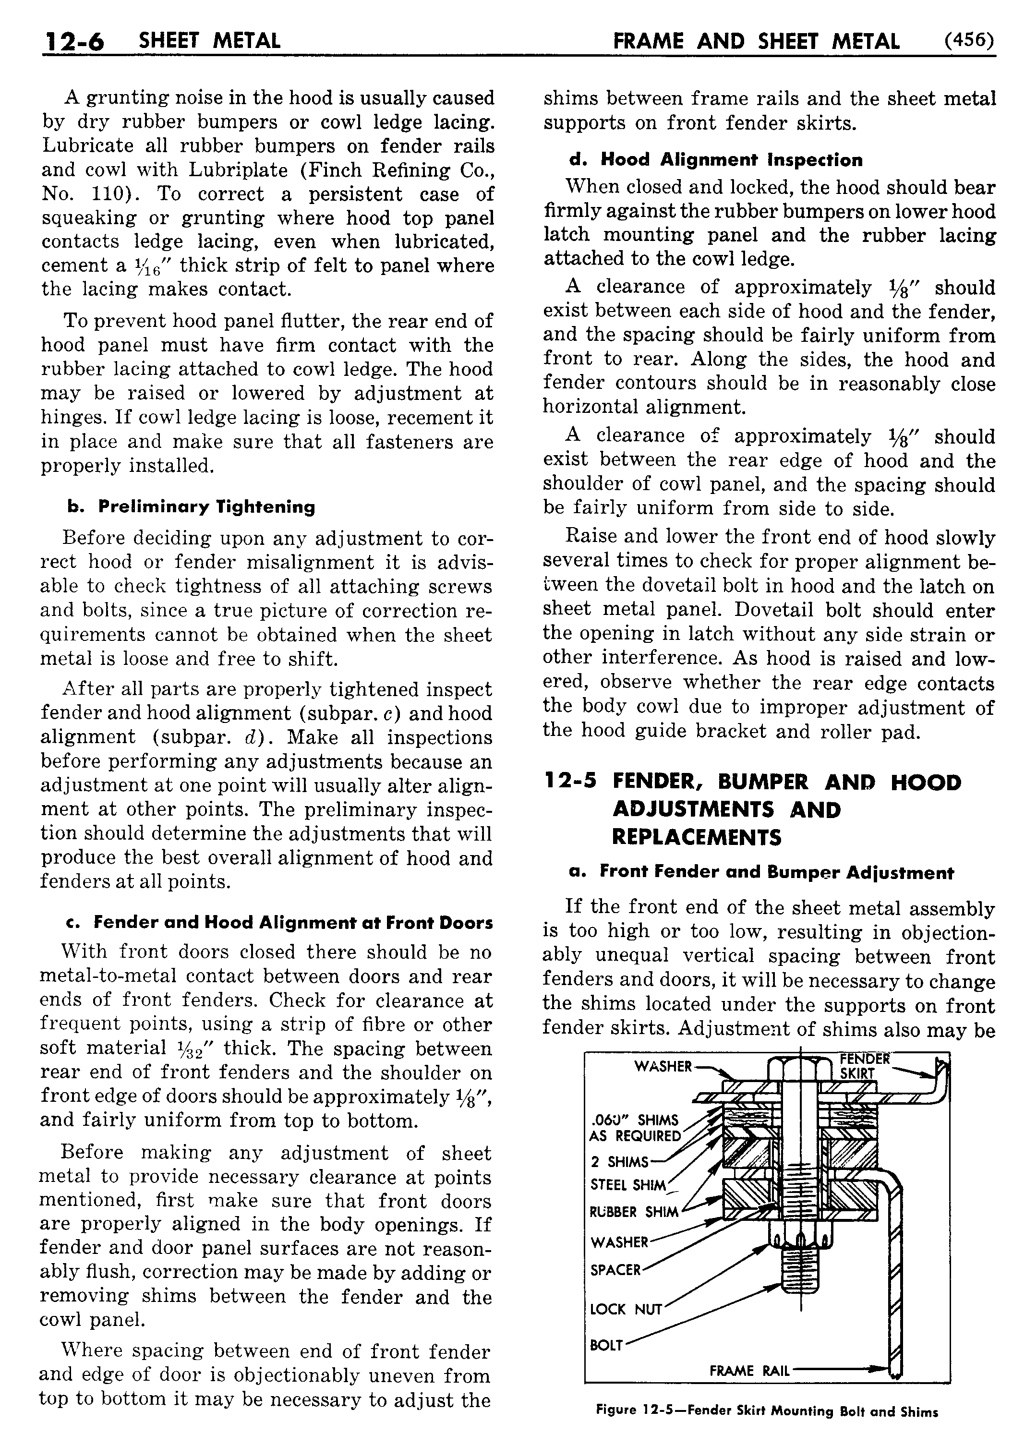 n_13 1956 Buick Shop Manual - Frame & Sheet Metal-006-006.jpg